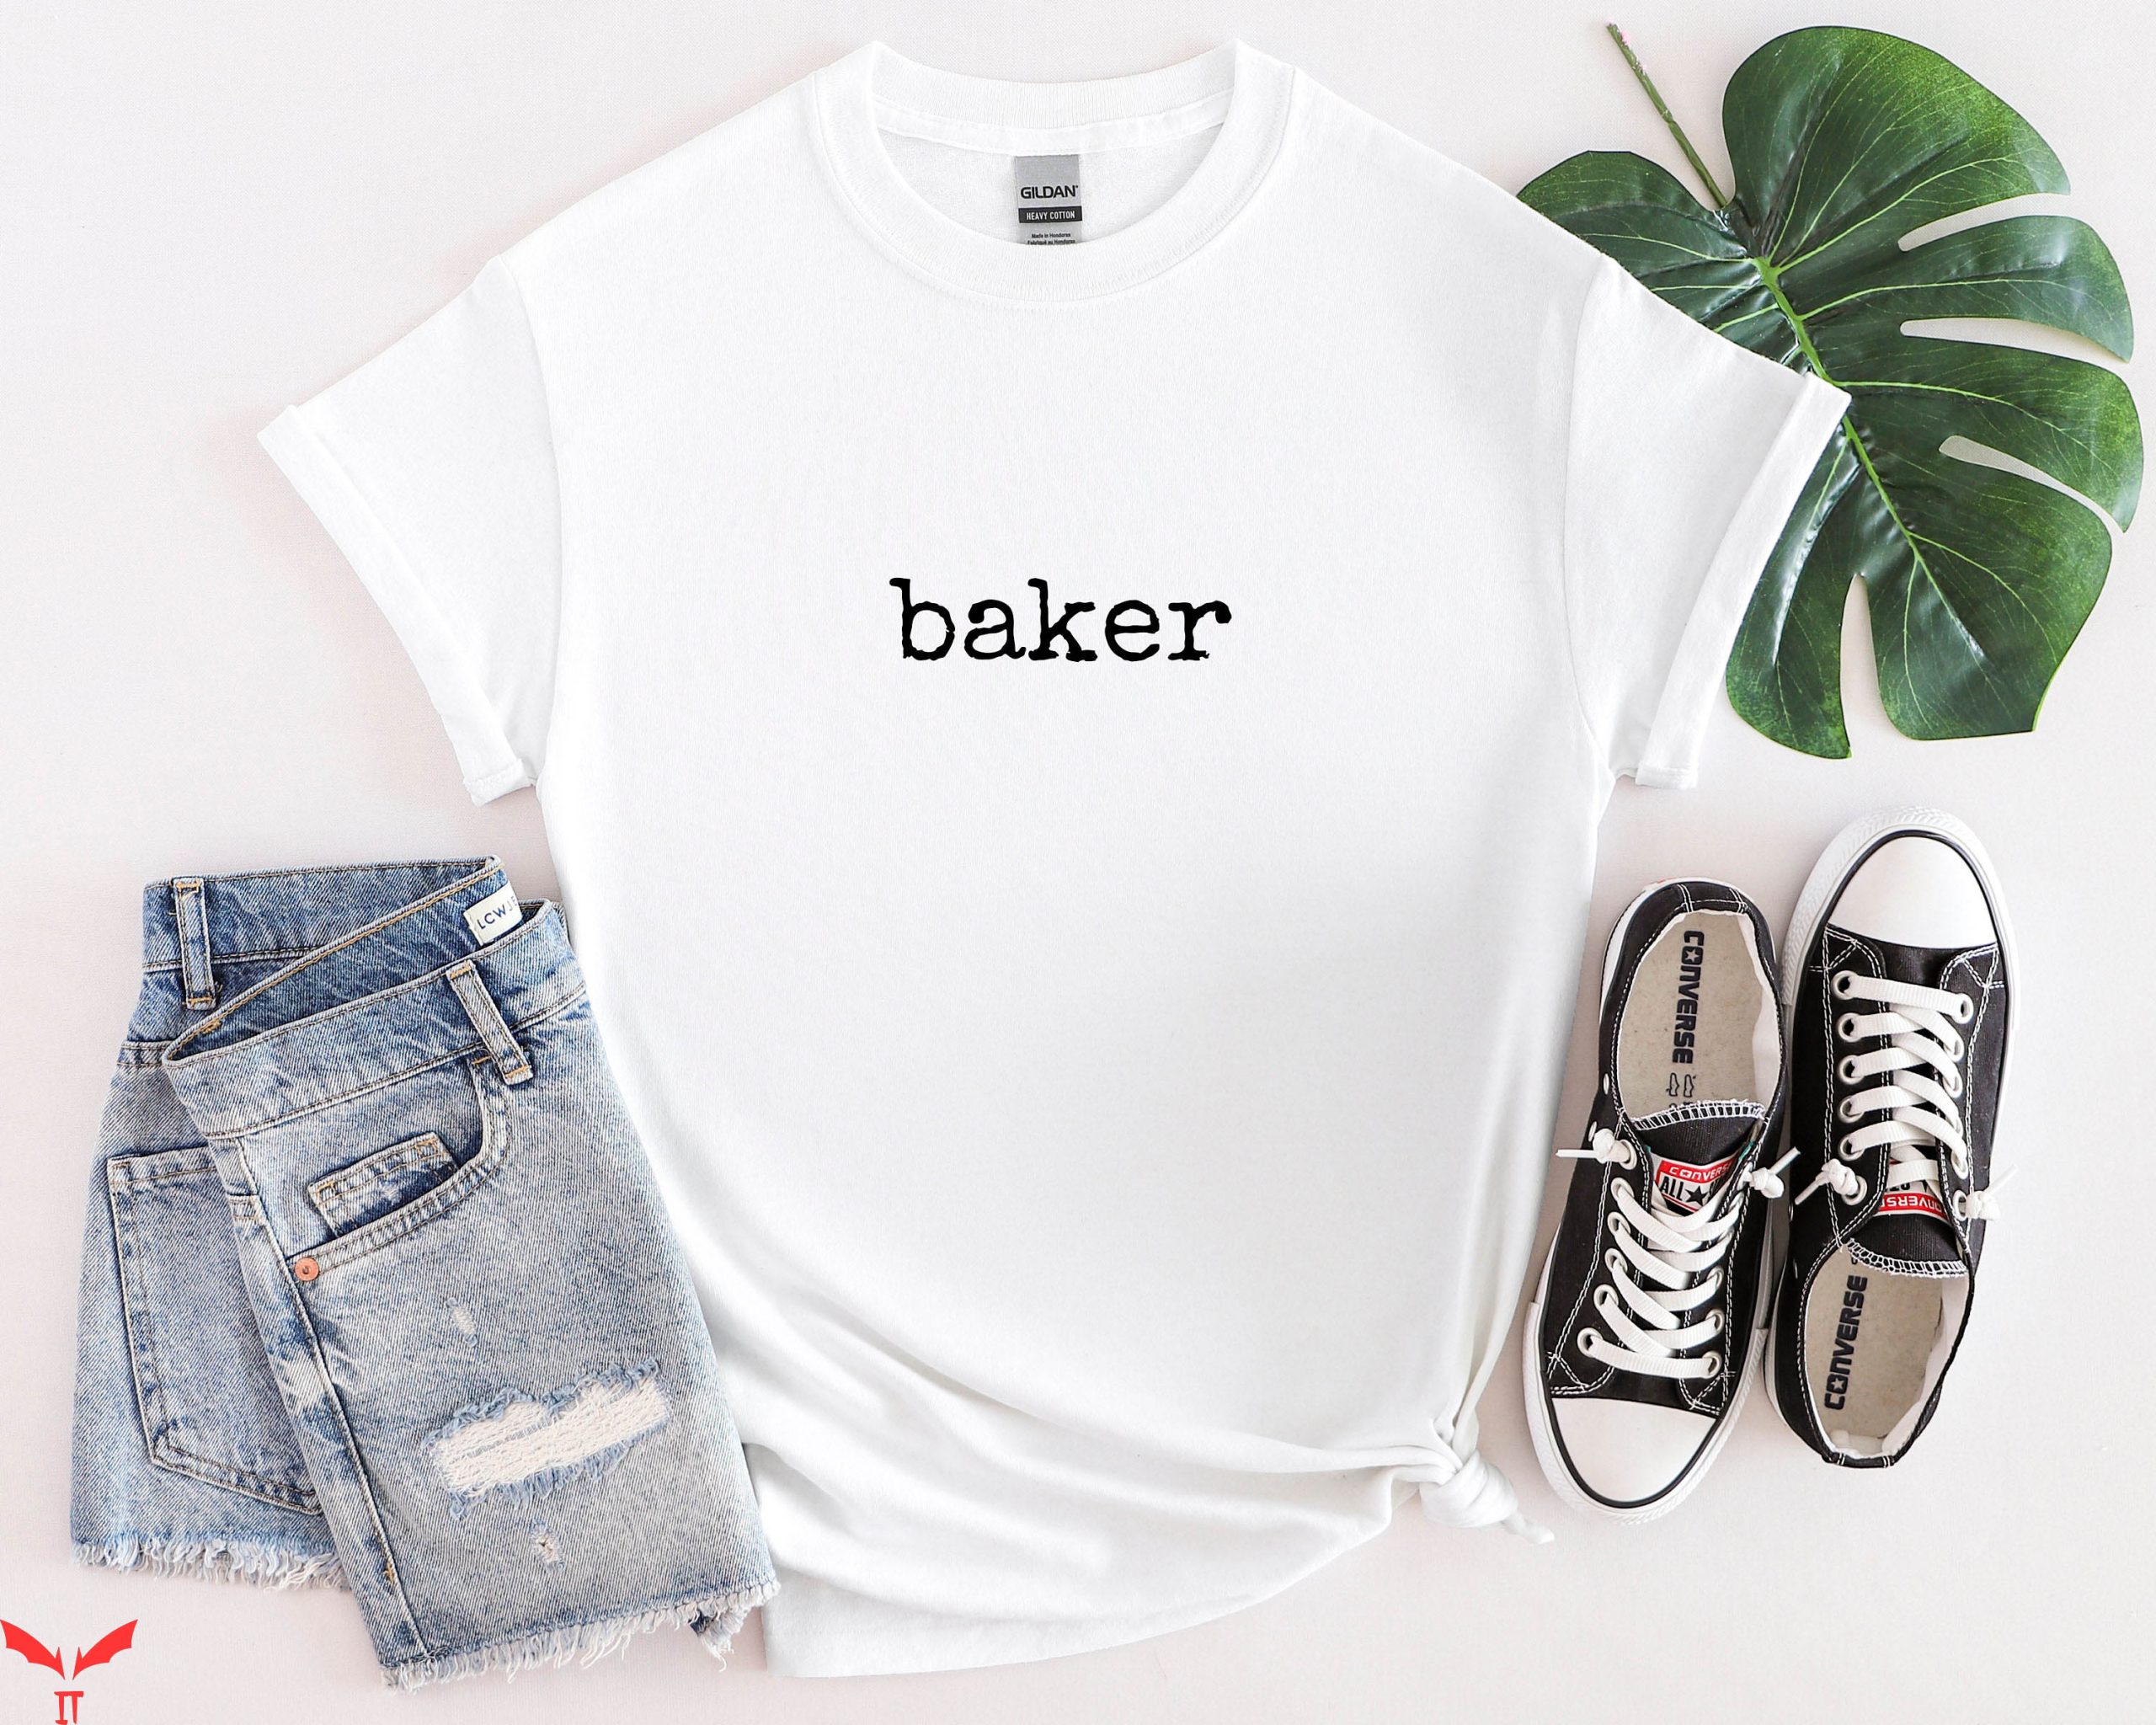 Baker T-Shirt Baking Queen Shirt